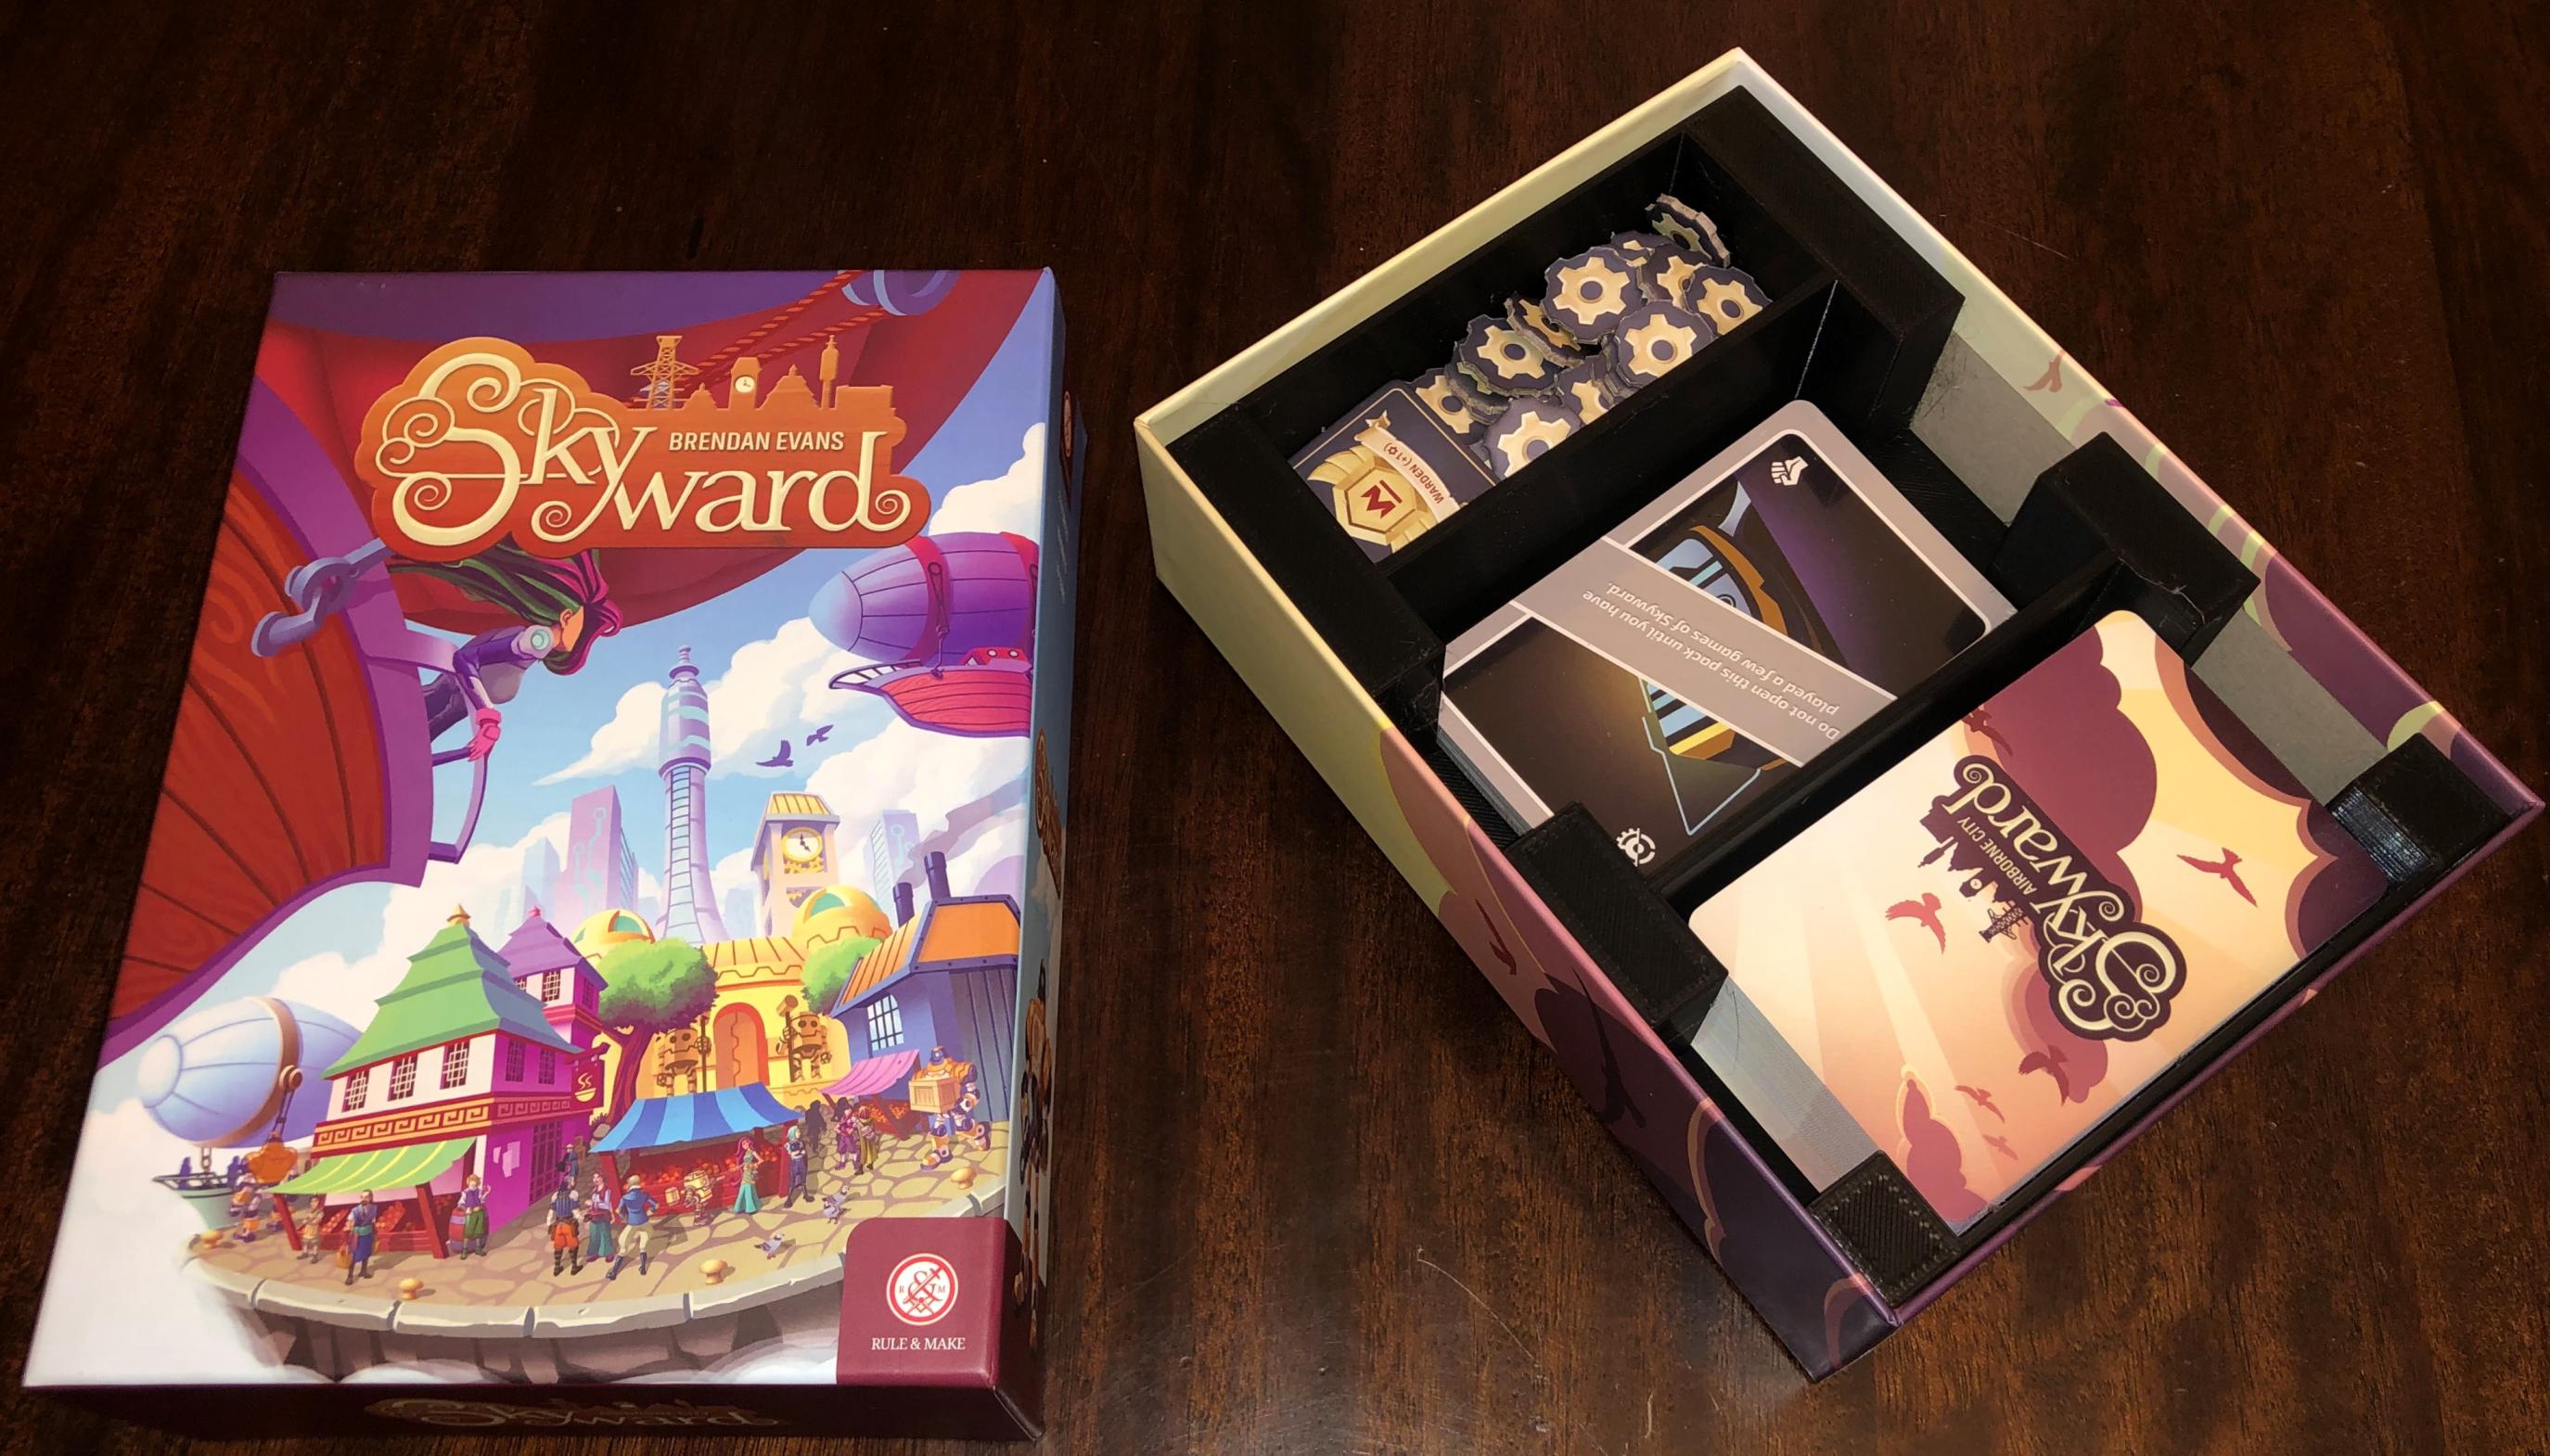 Skyward game box insert